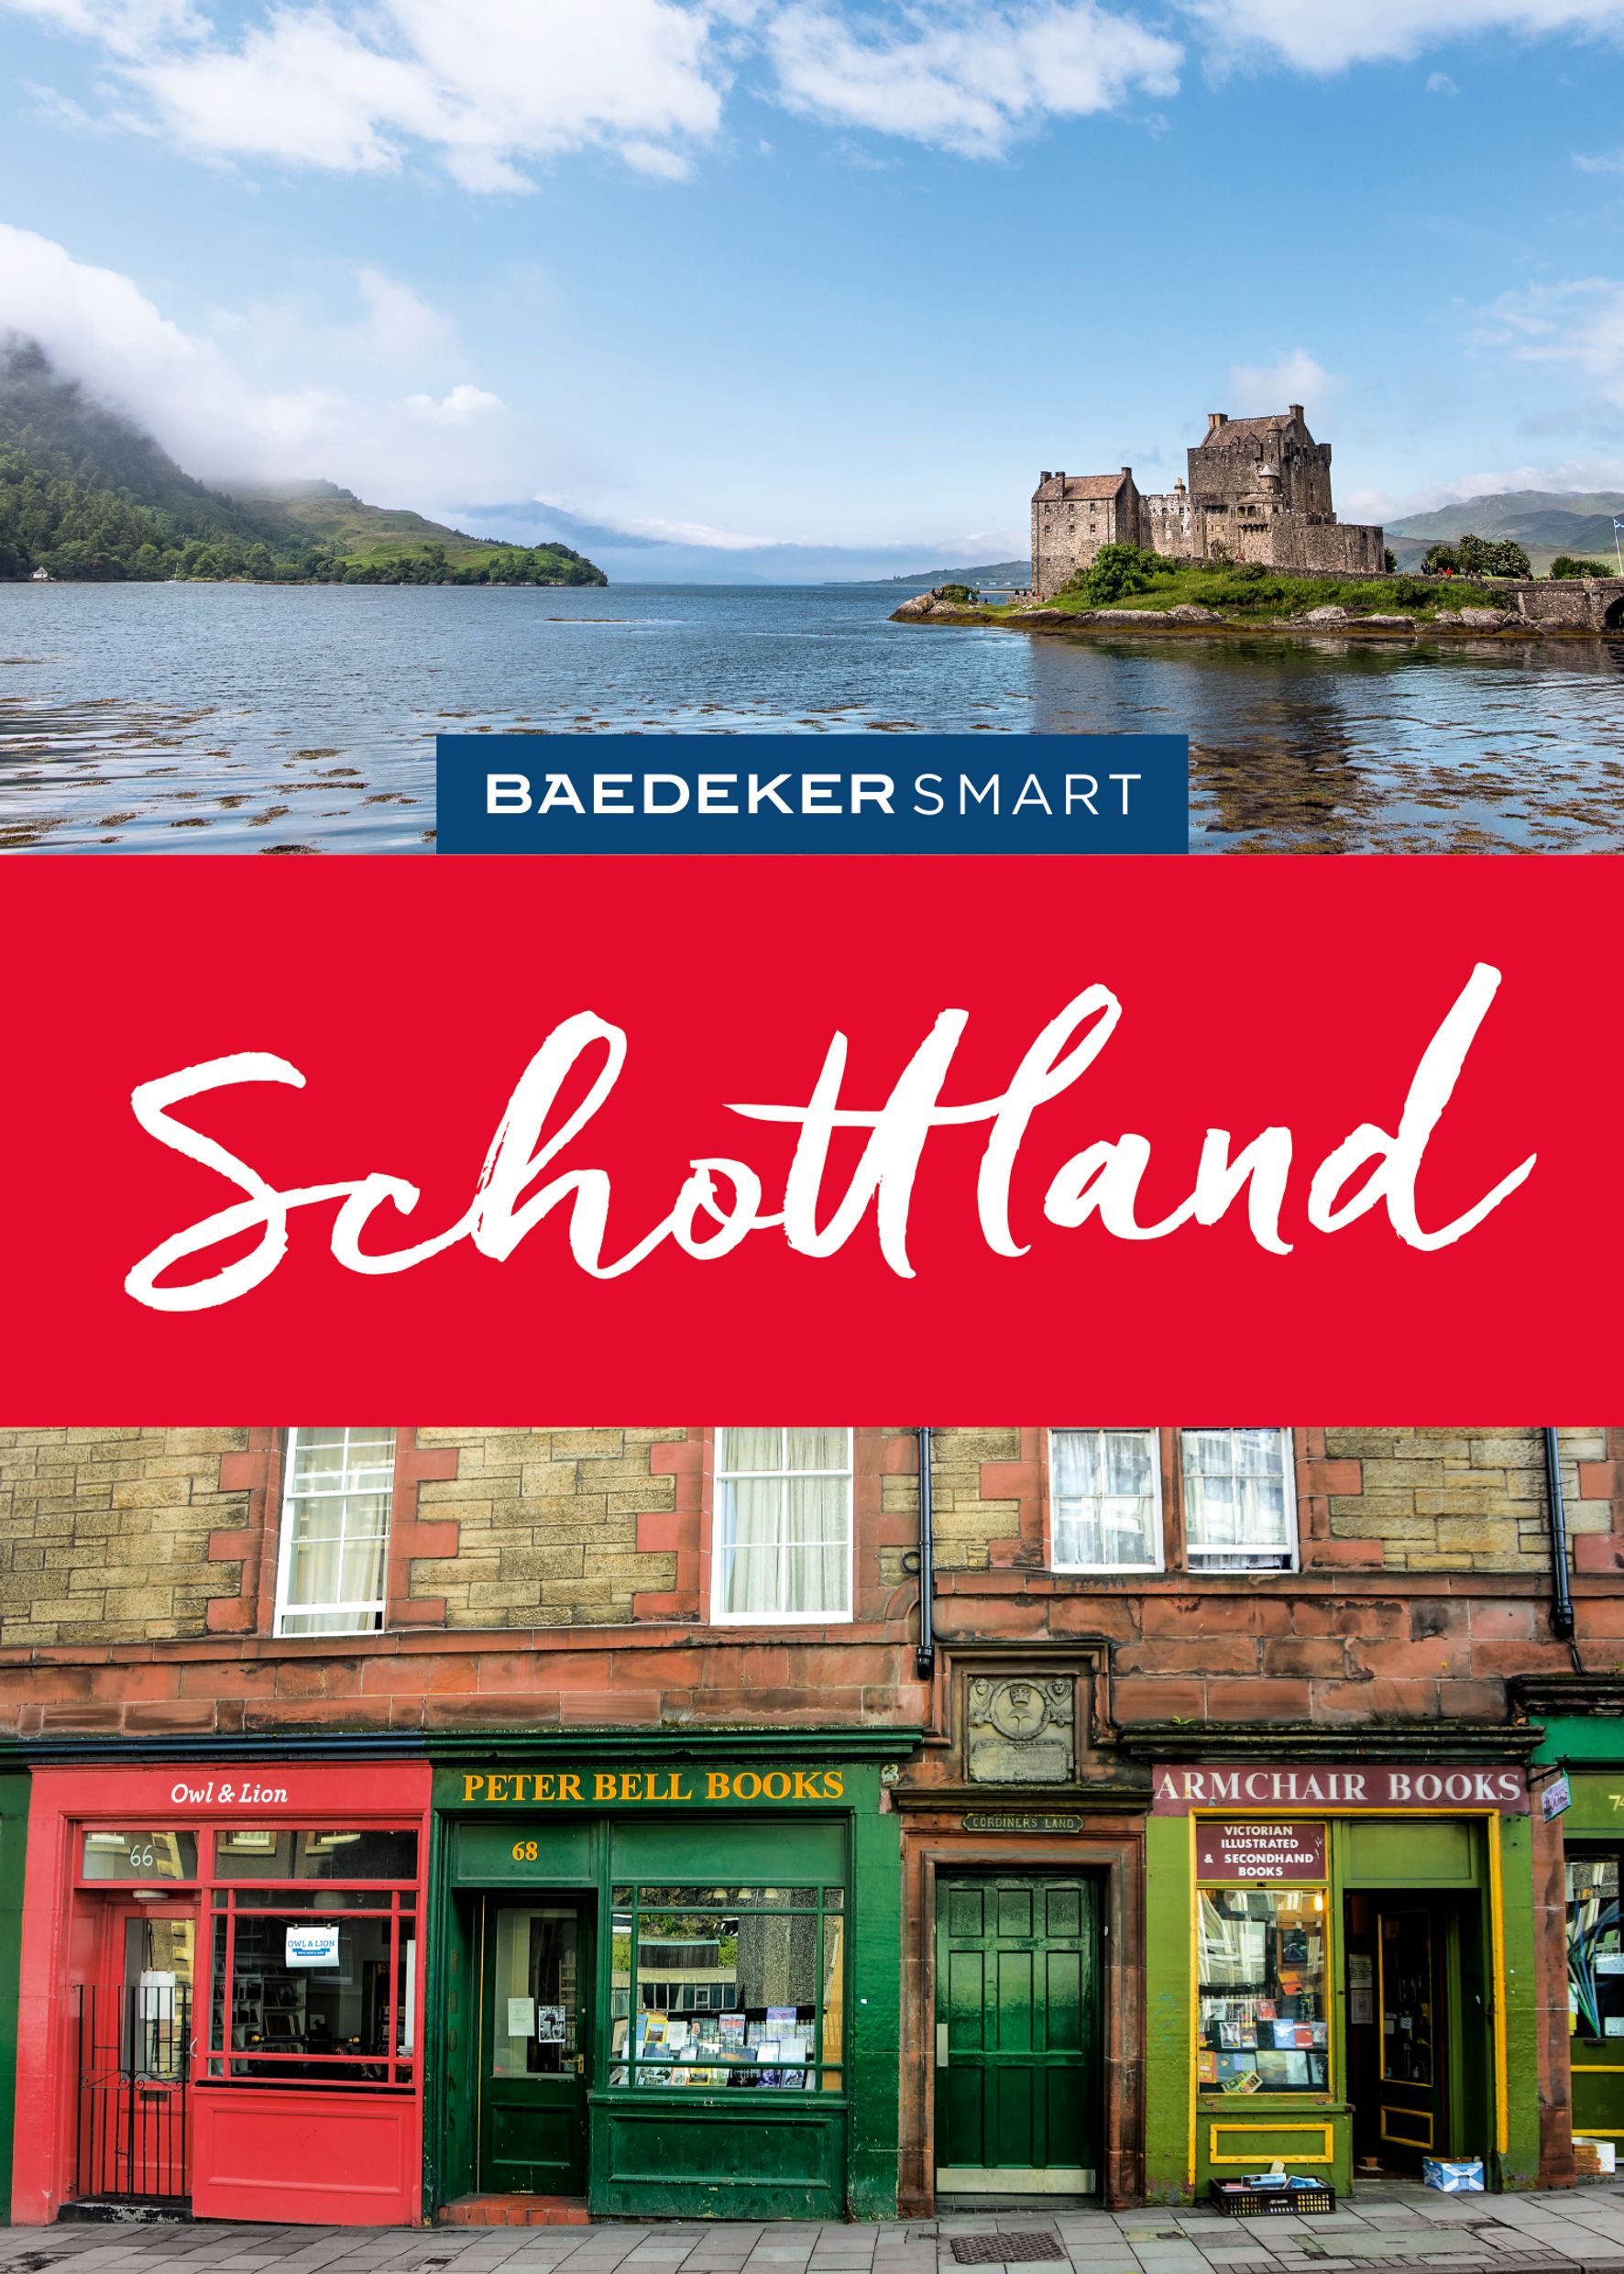 Baedeker Schottland (eBook)